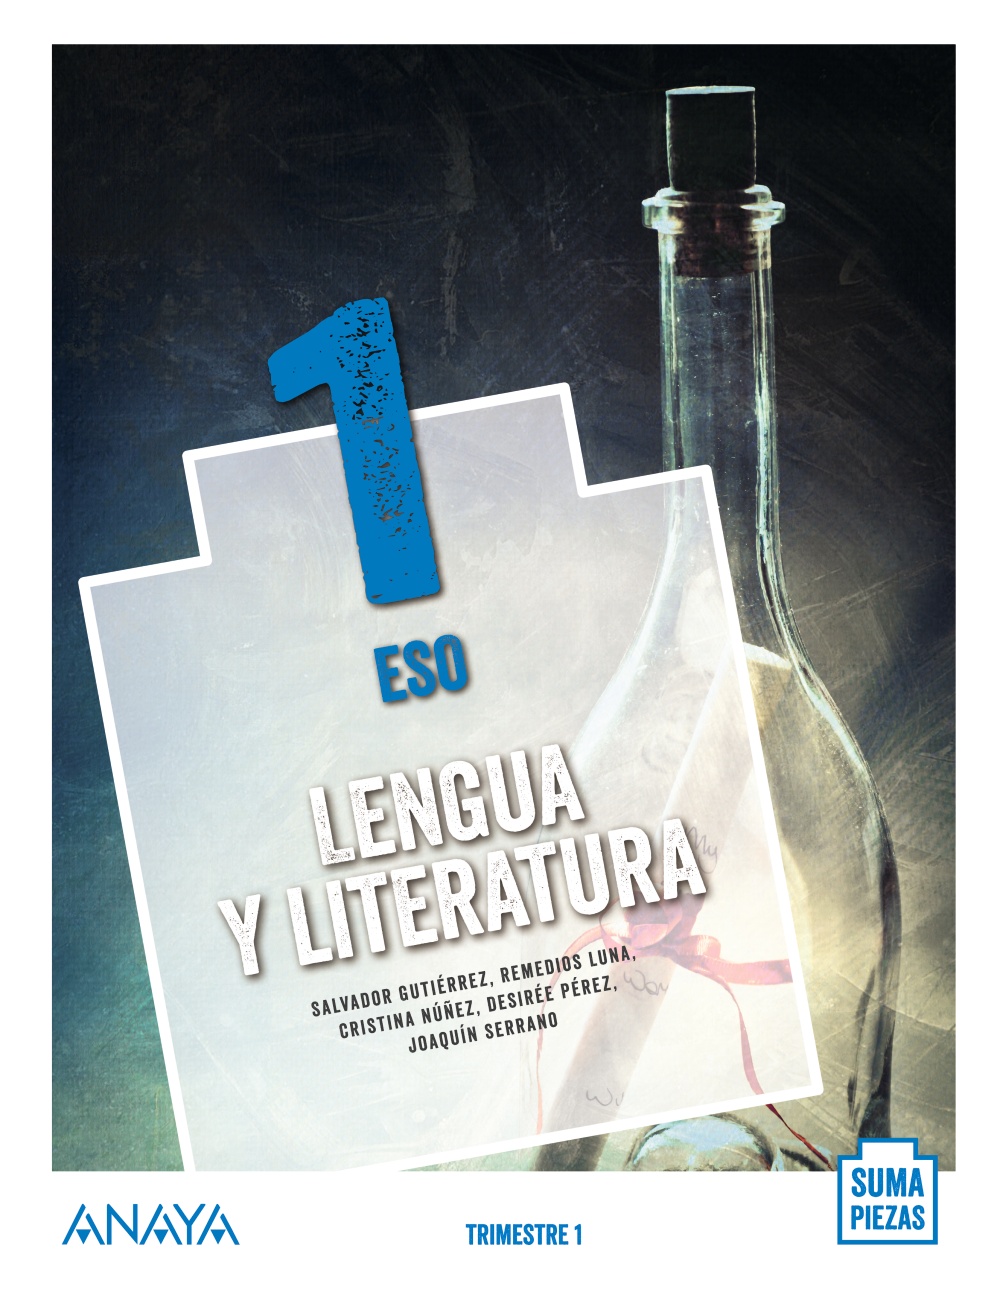 Solucionario Lengua y Literatura 1 ESO Anaya Suma Piezas PDF Ejercicios Resueltos-pdf